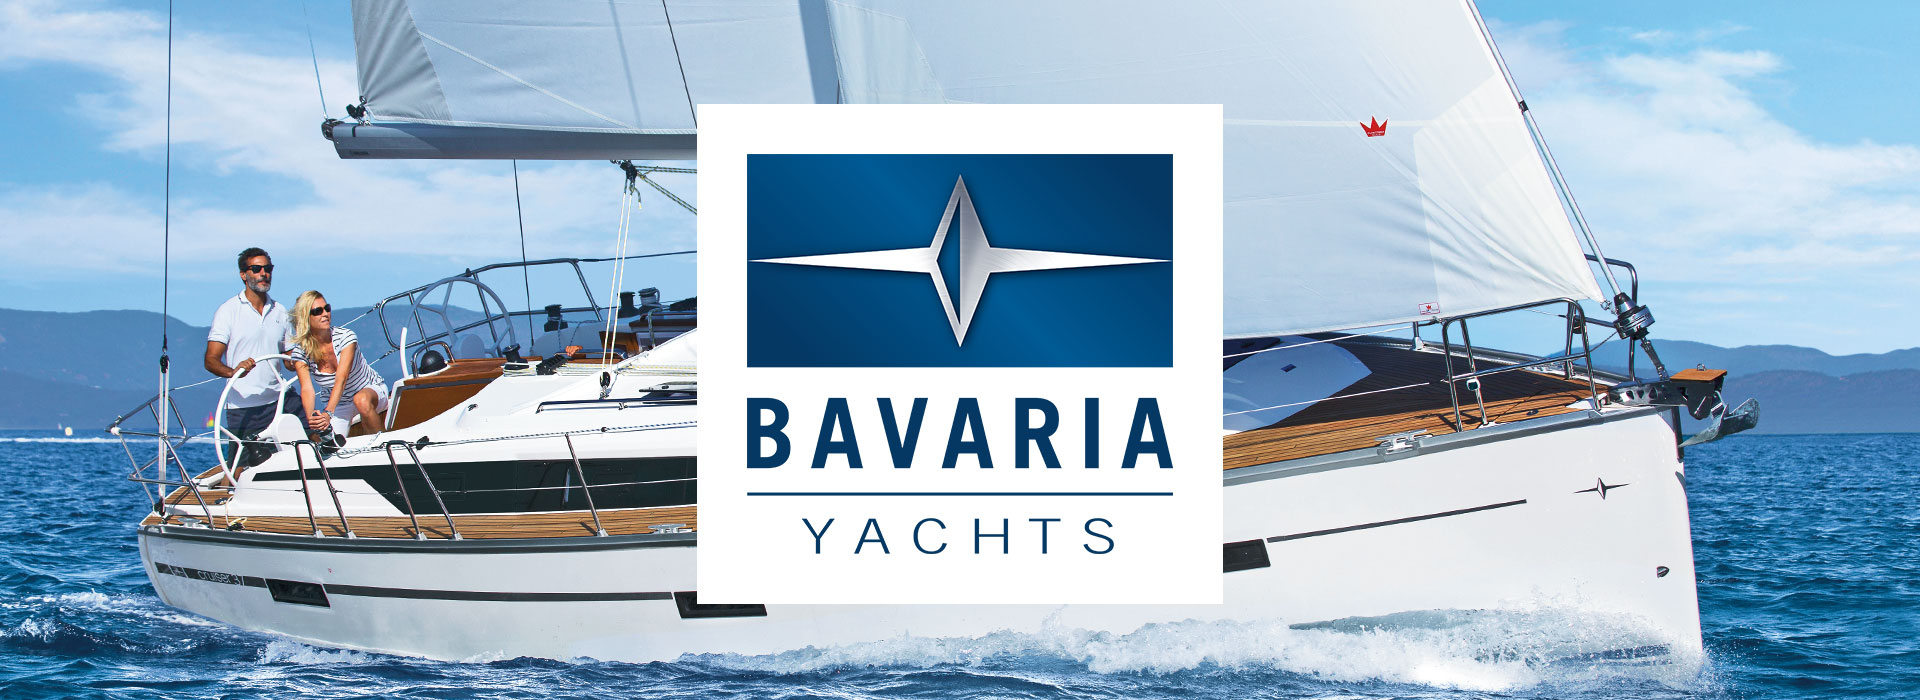 bavaria yachts umsatz